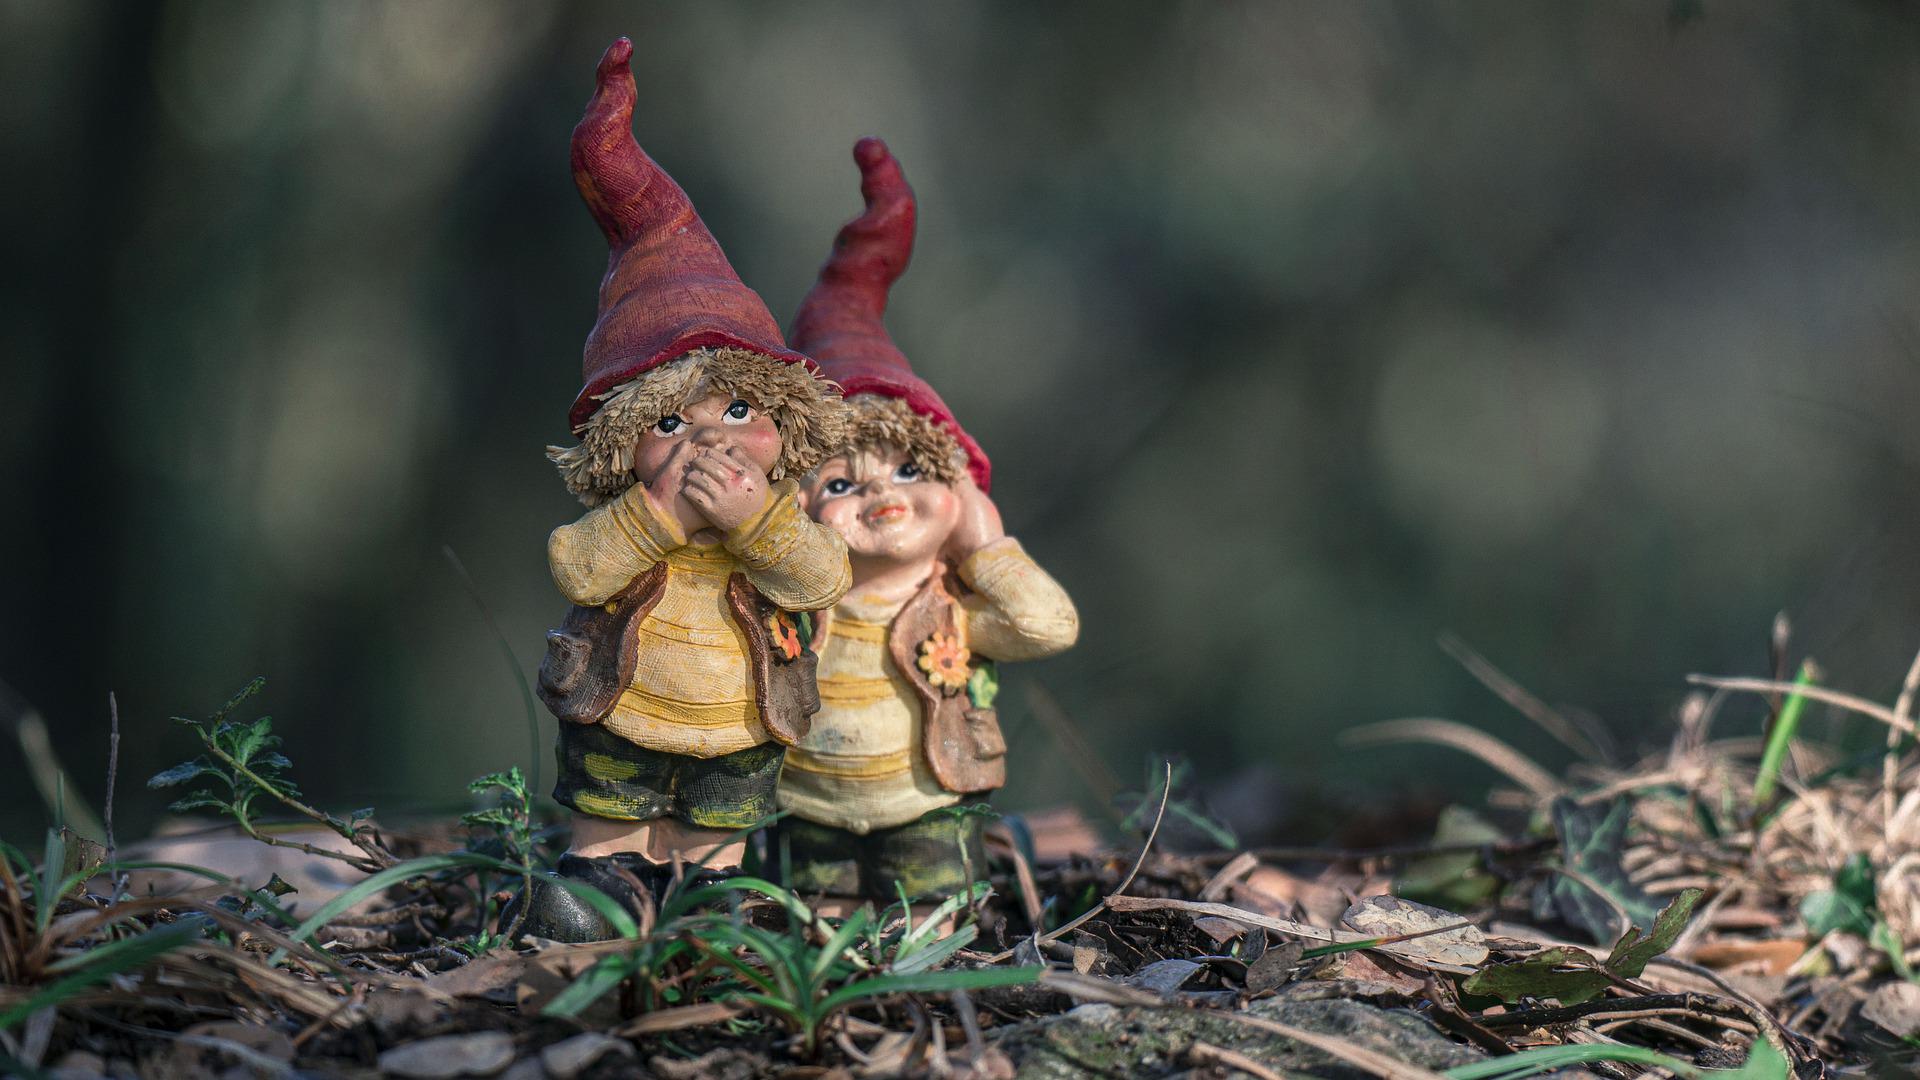 Imagen de dos elfos con gorros de color rojo.